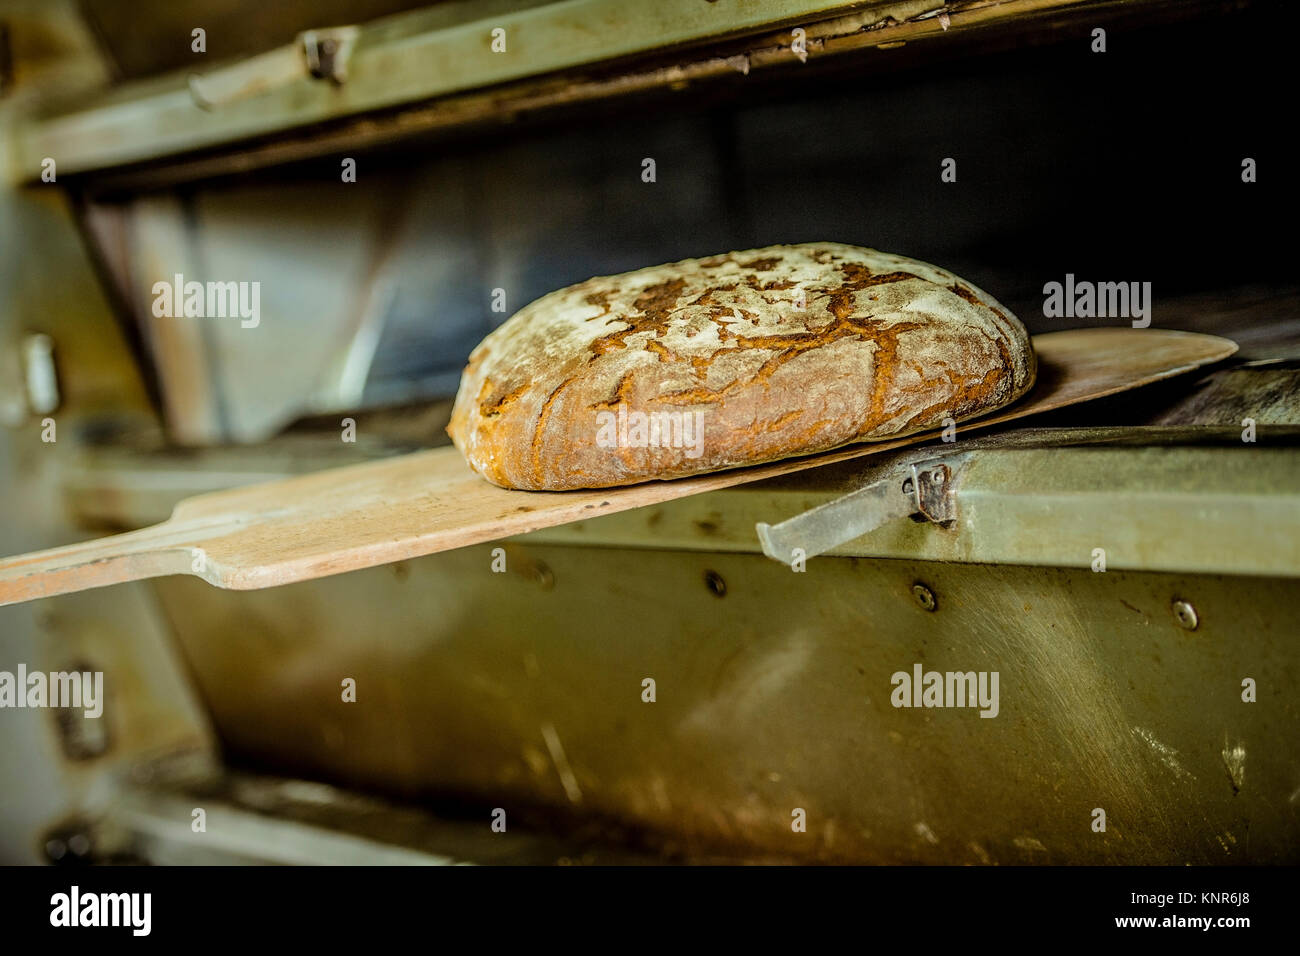 Brot backen, Backstube - baking bread Stock Photo